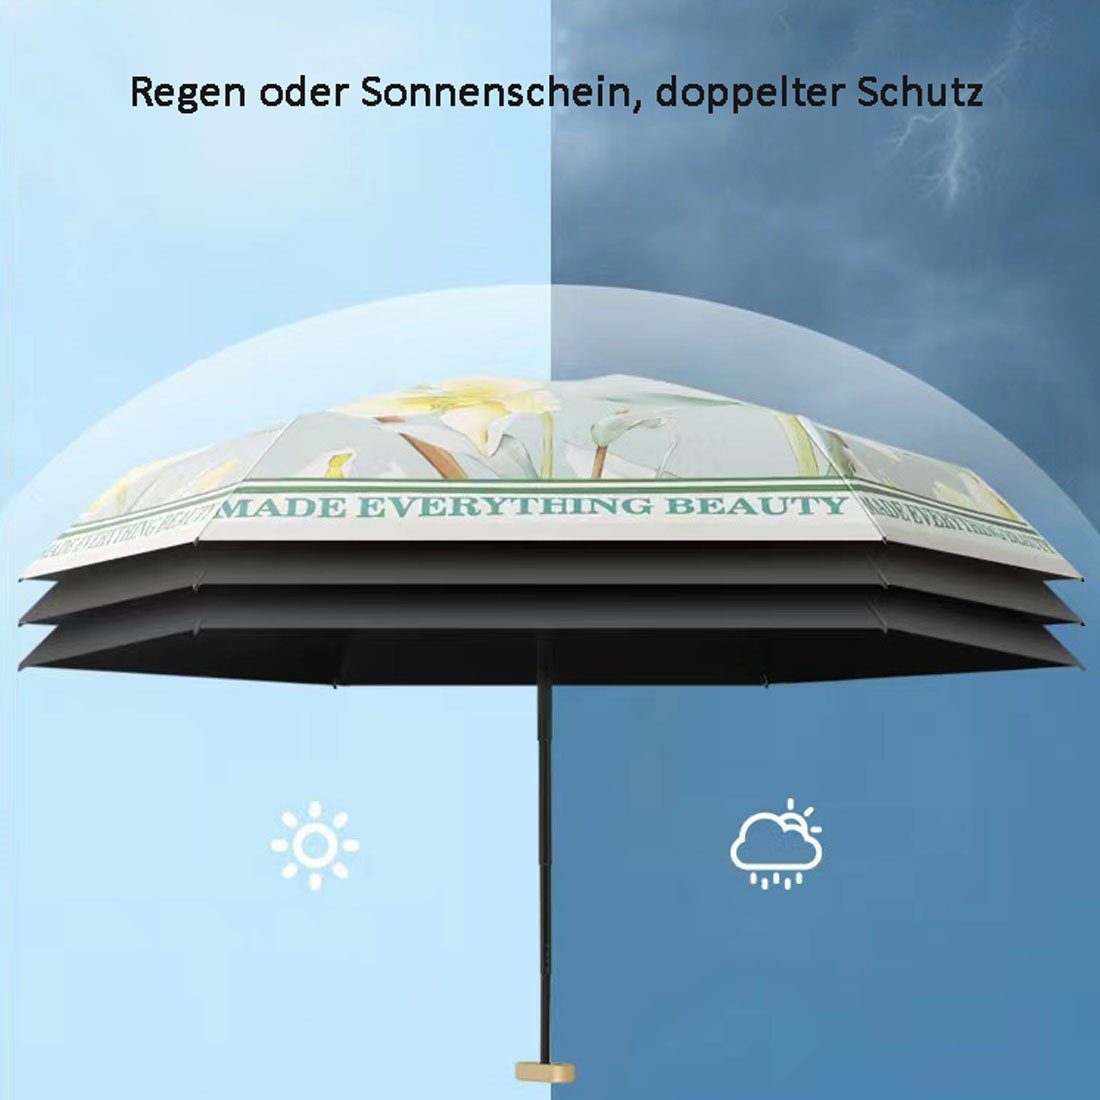 Reiseschirm, Blumenregenschirm tragbarer UV-Faltschirm, DÖRÖY Taschenregenschirm regensicher,